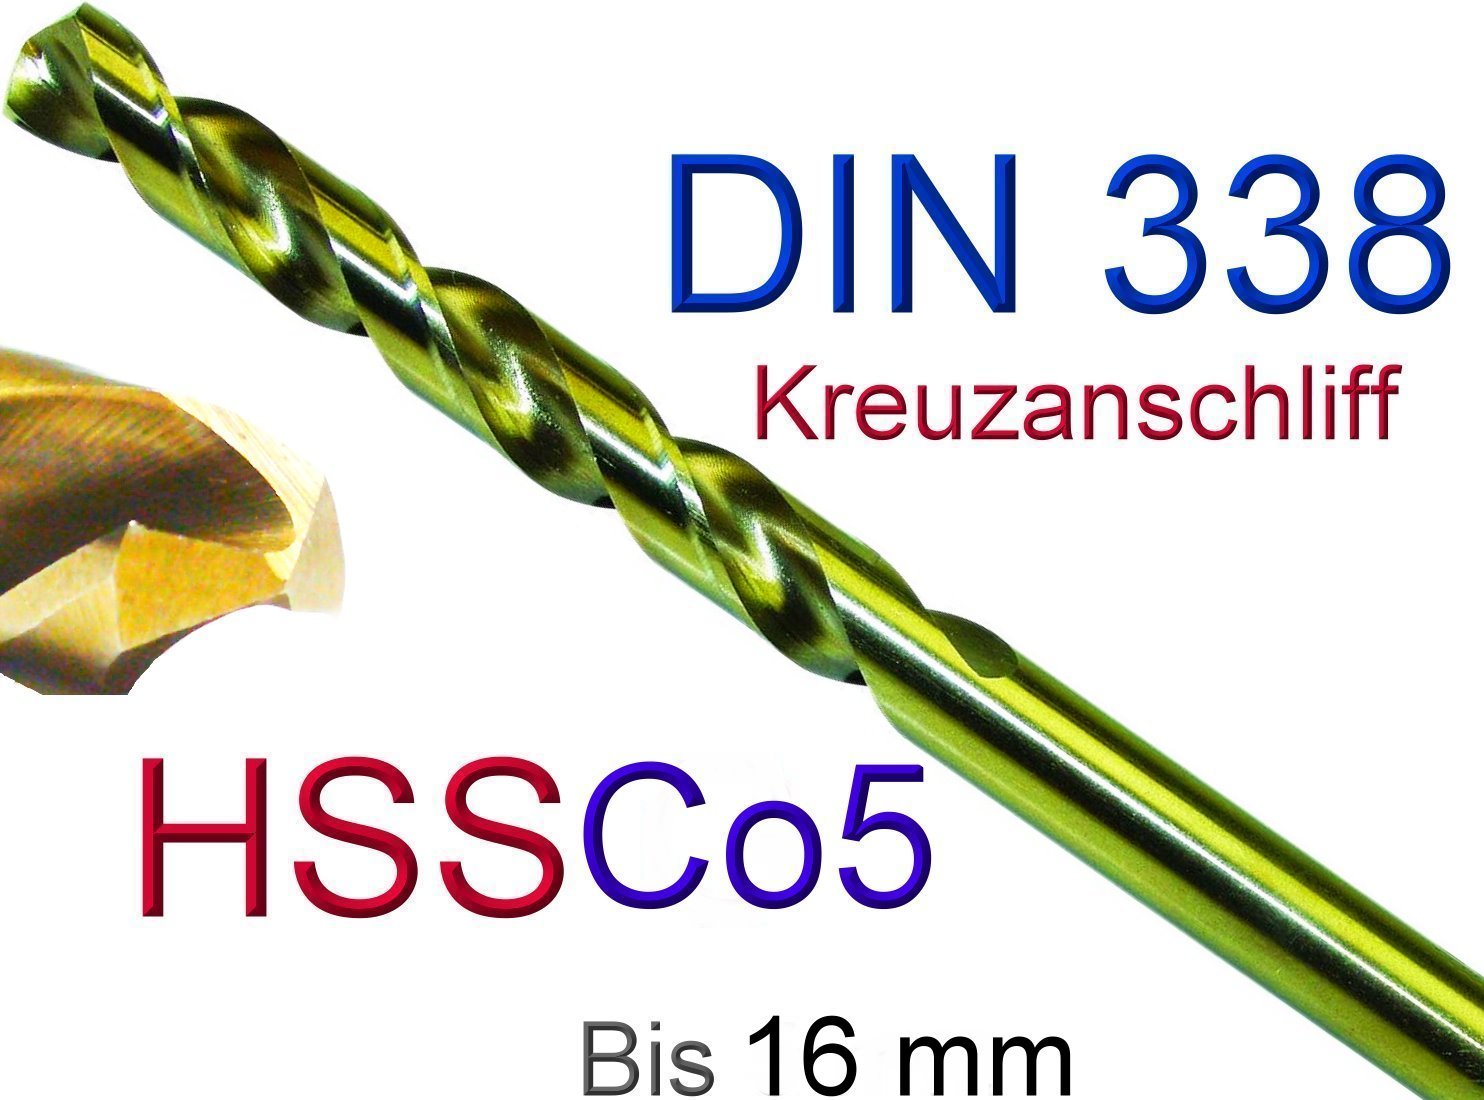 Presto Hi-NOX® Industrie-Spiralbohrer für VA/Edelstahl 3,0-13,0 mm zur AUSWAHL 